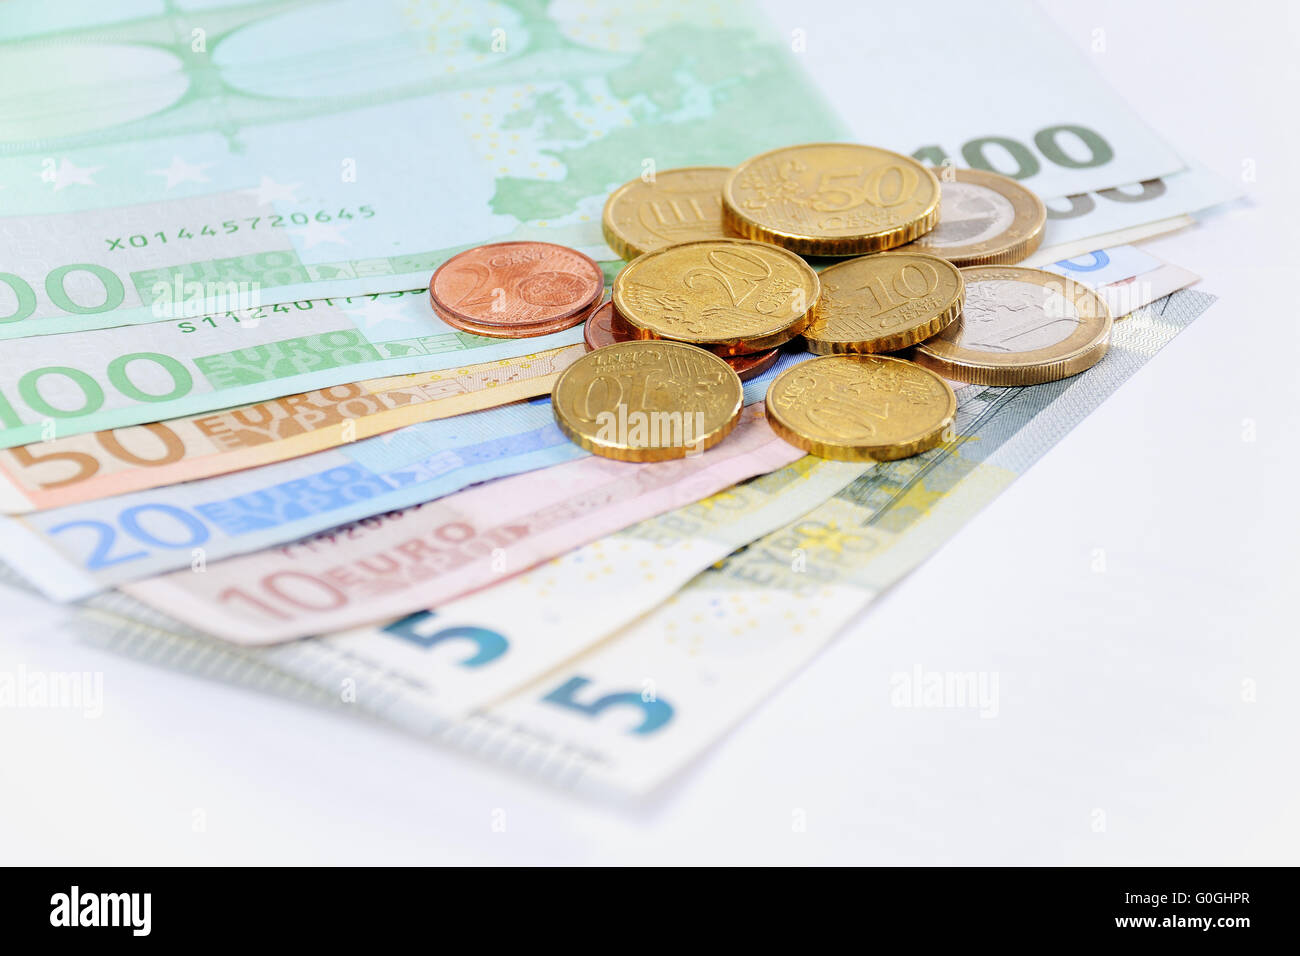 Le projet de loi et des pièces en euro avec fond blanc Banque D'Images